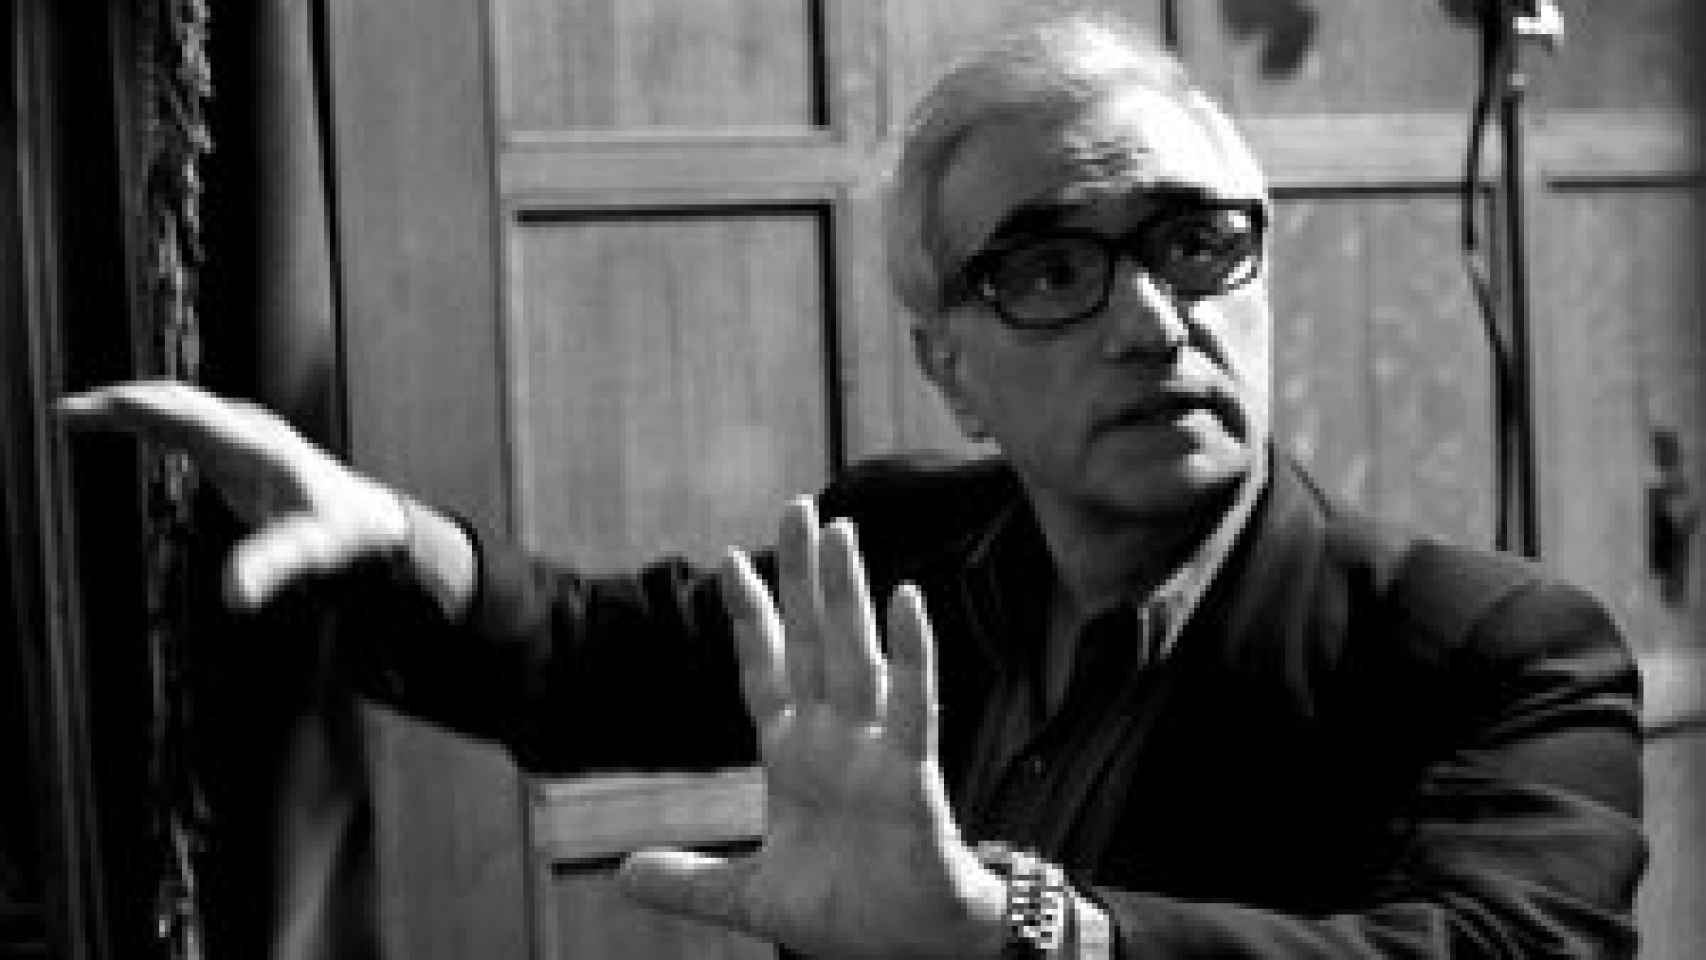 Image: Martin Scorsese